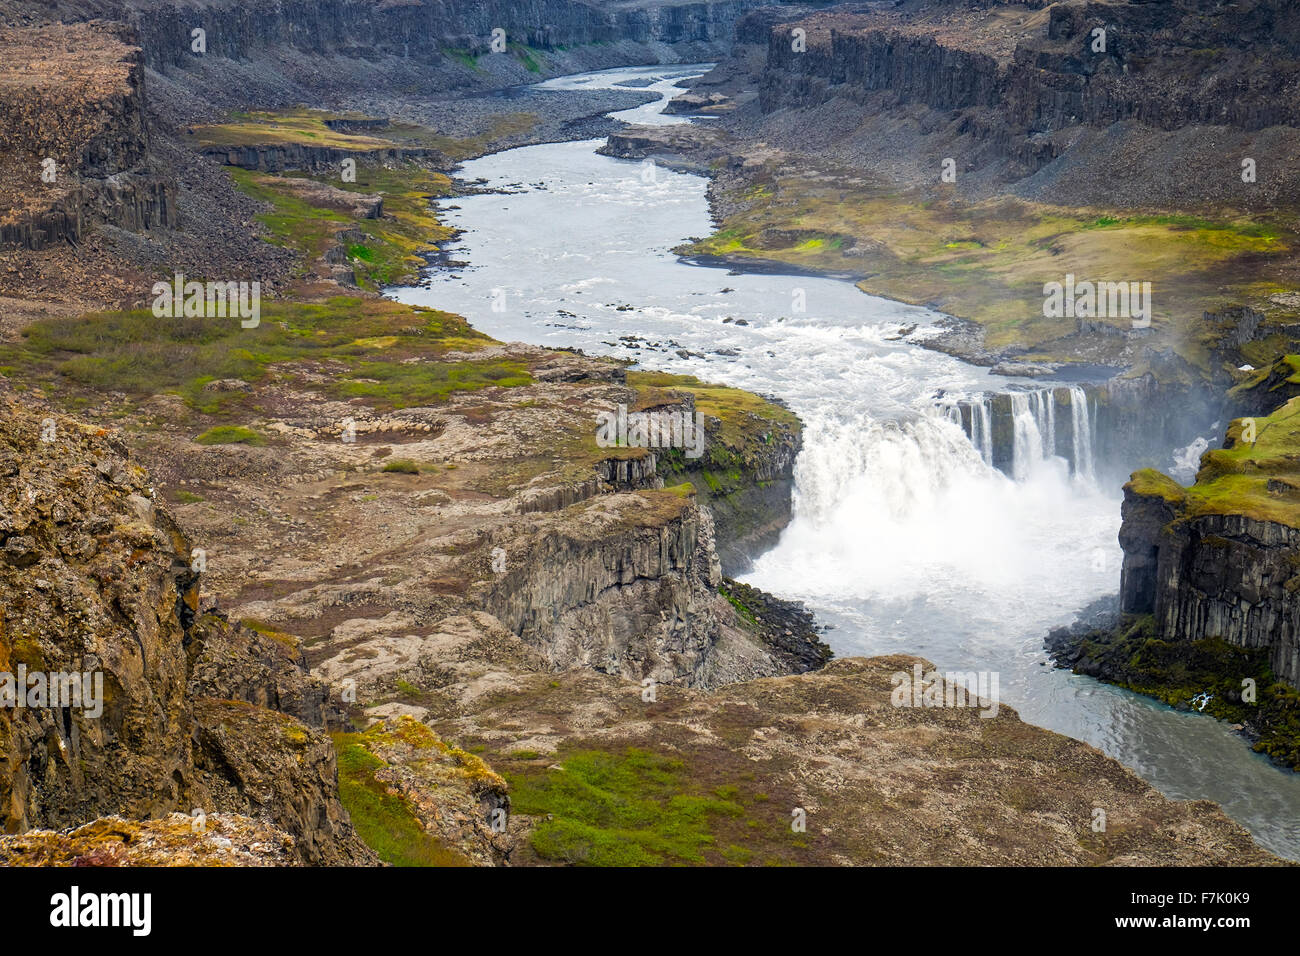 The Jokulsargljufur valley with the Hafragilsfoss waterfall in Iceland Stock Photo